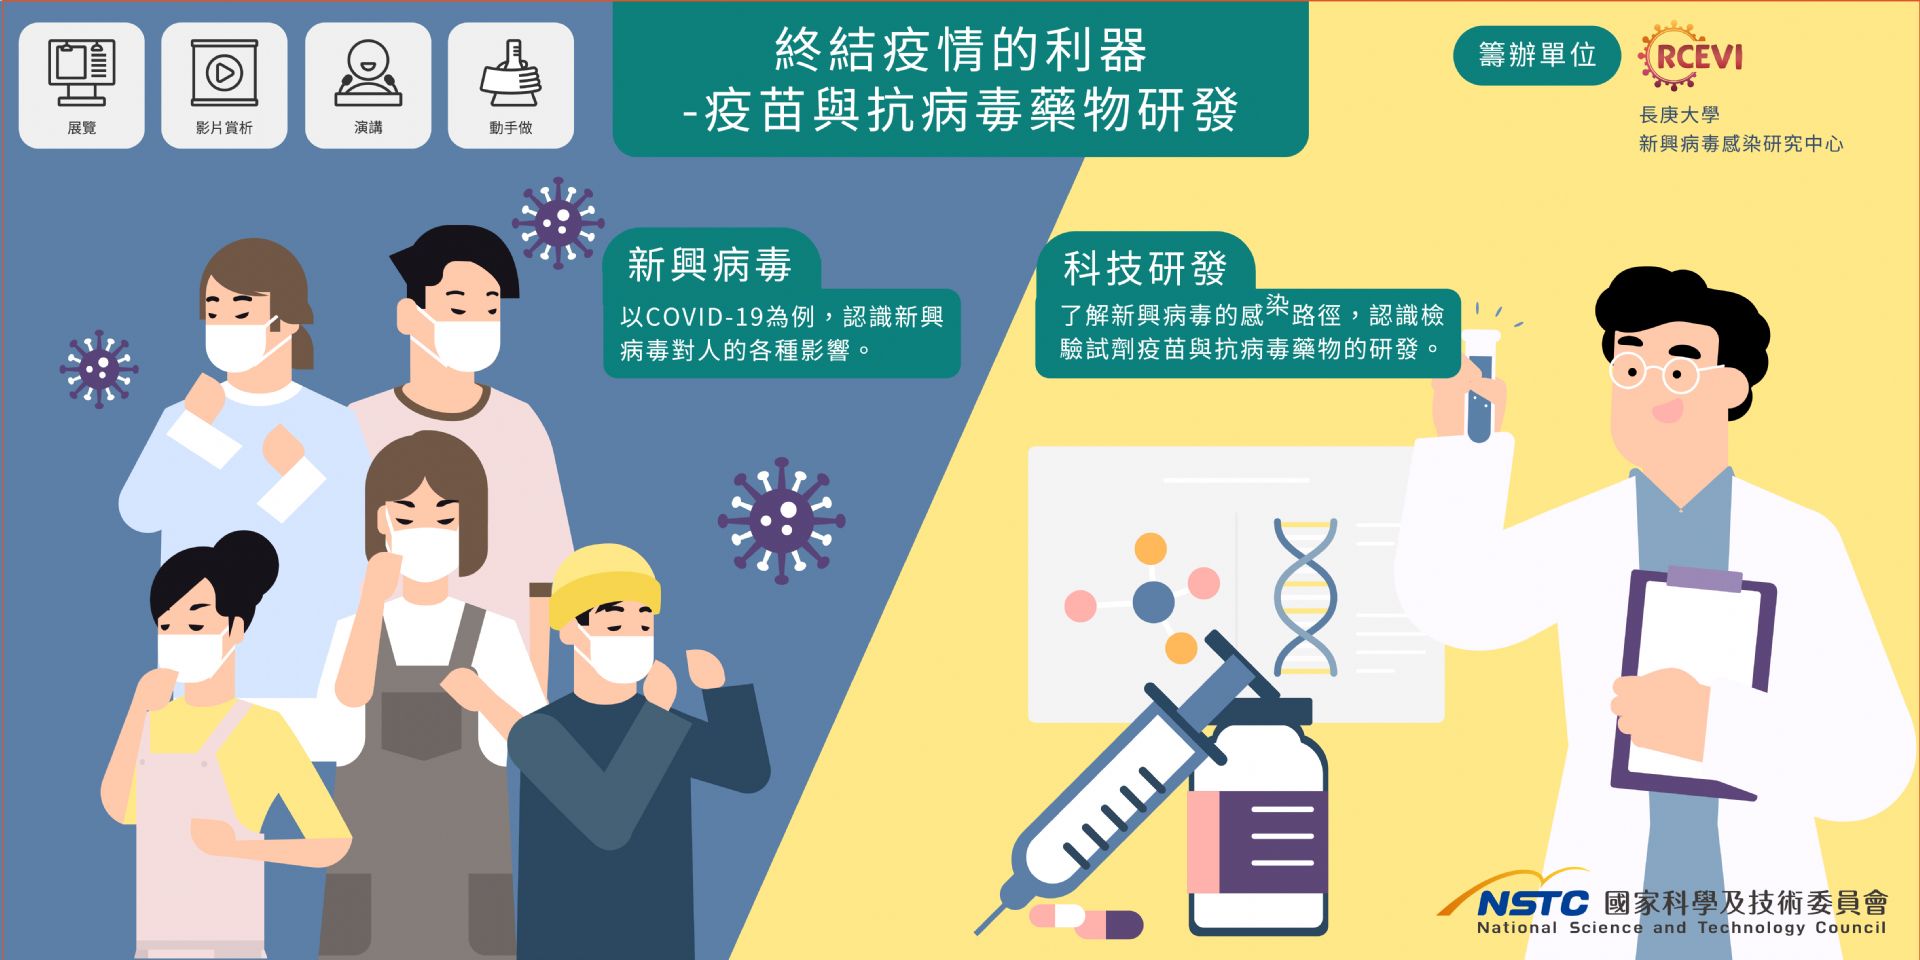  終結疫情的利器 - 疫苗與抗病毒藥物的研發